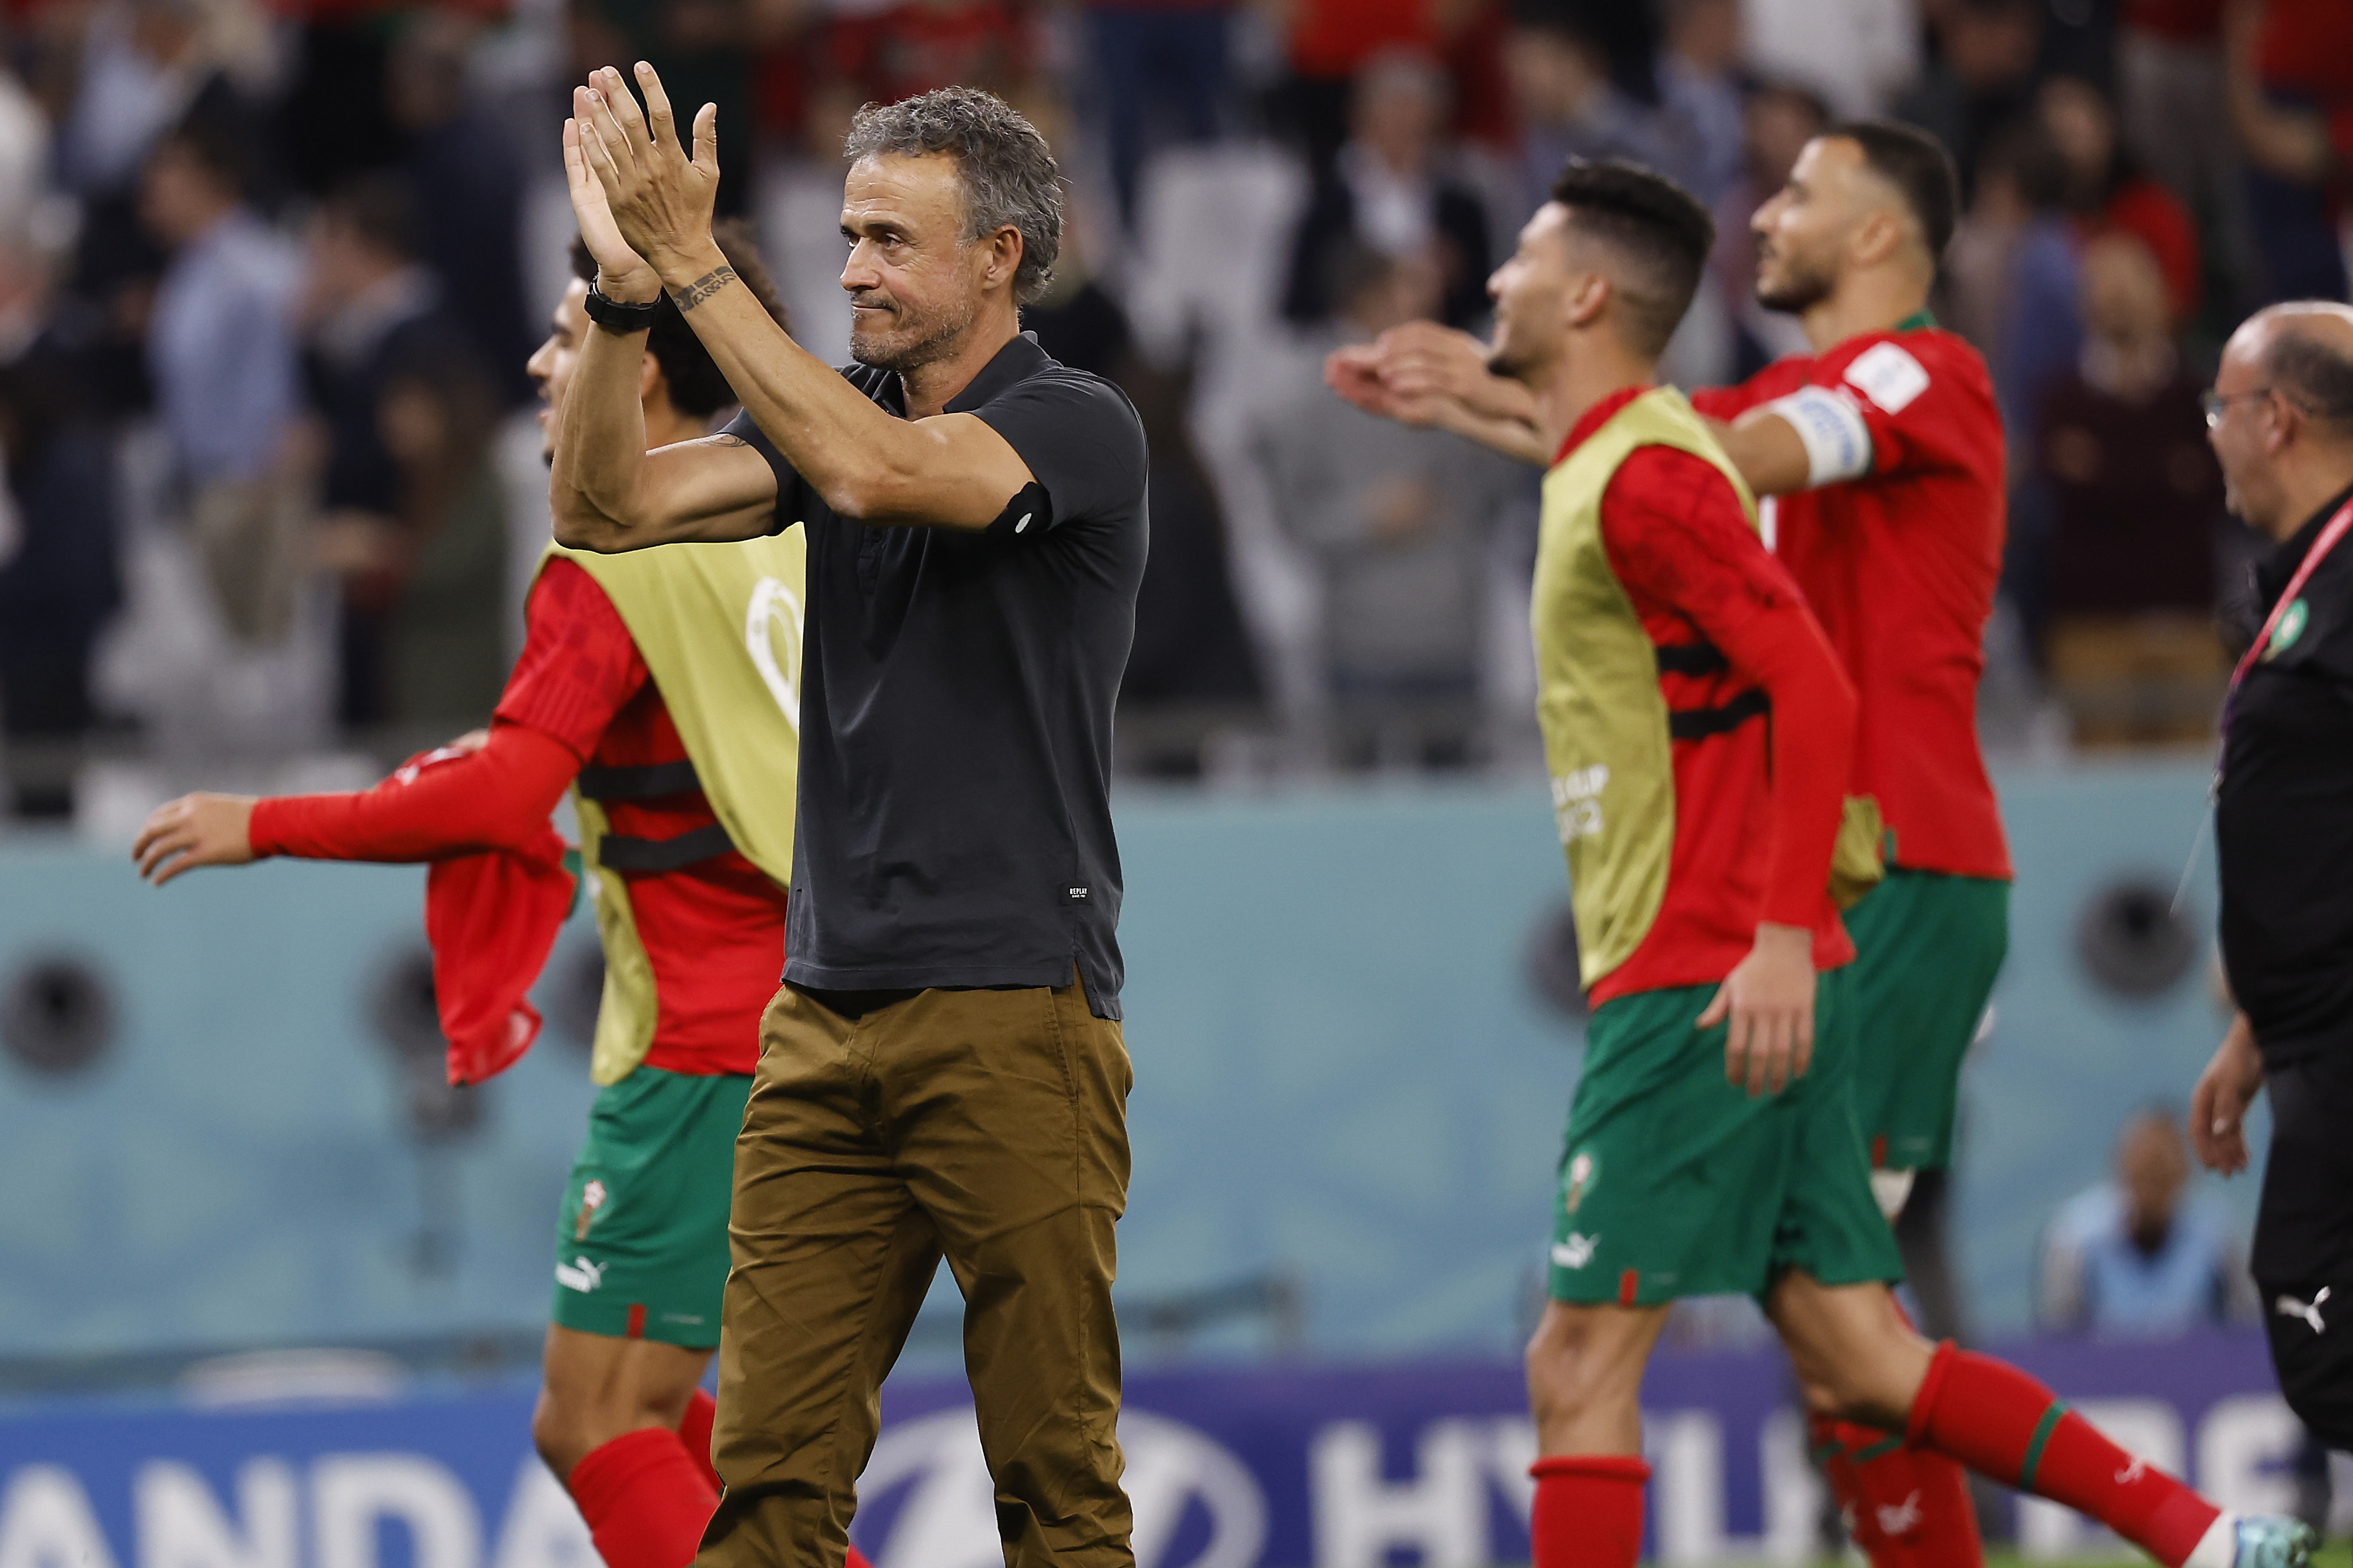 Spain coach Luis Enrique fired, De la Fuente takes over | Reuters